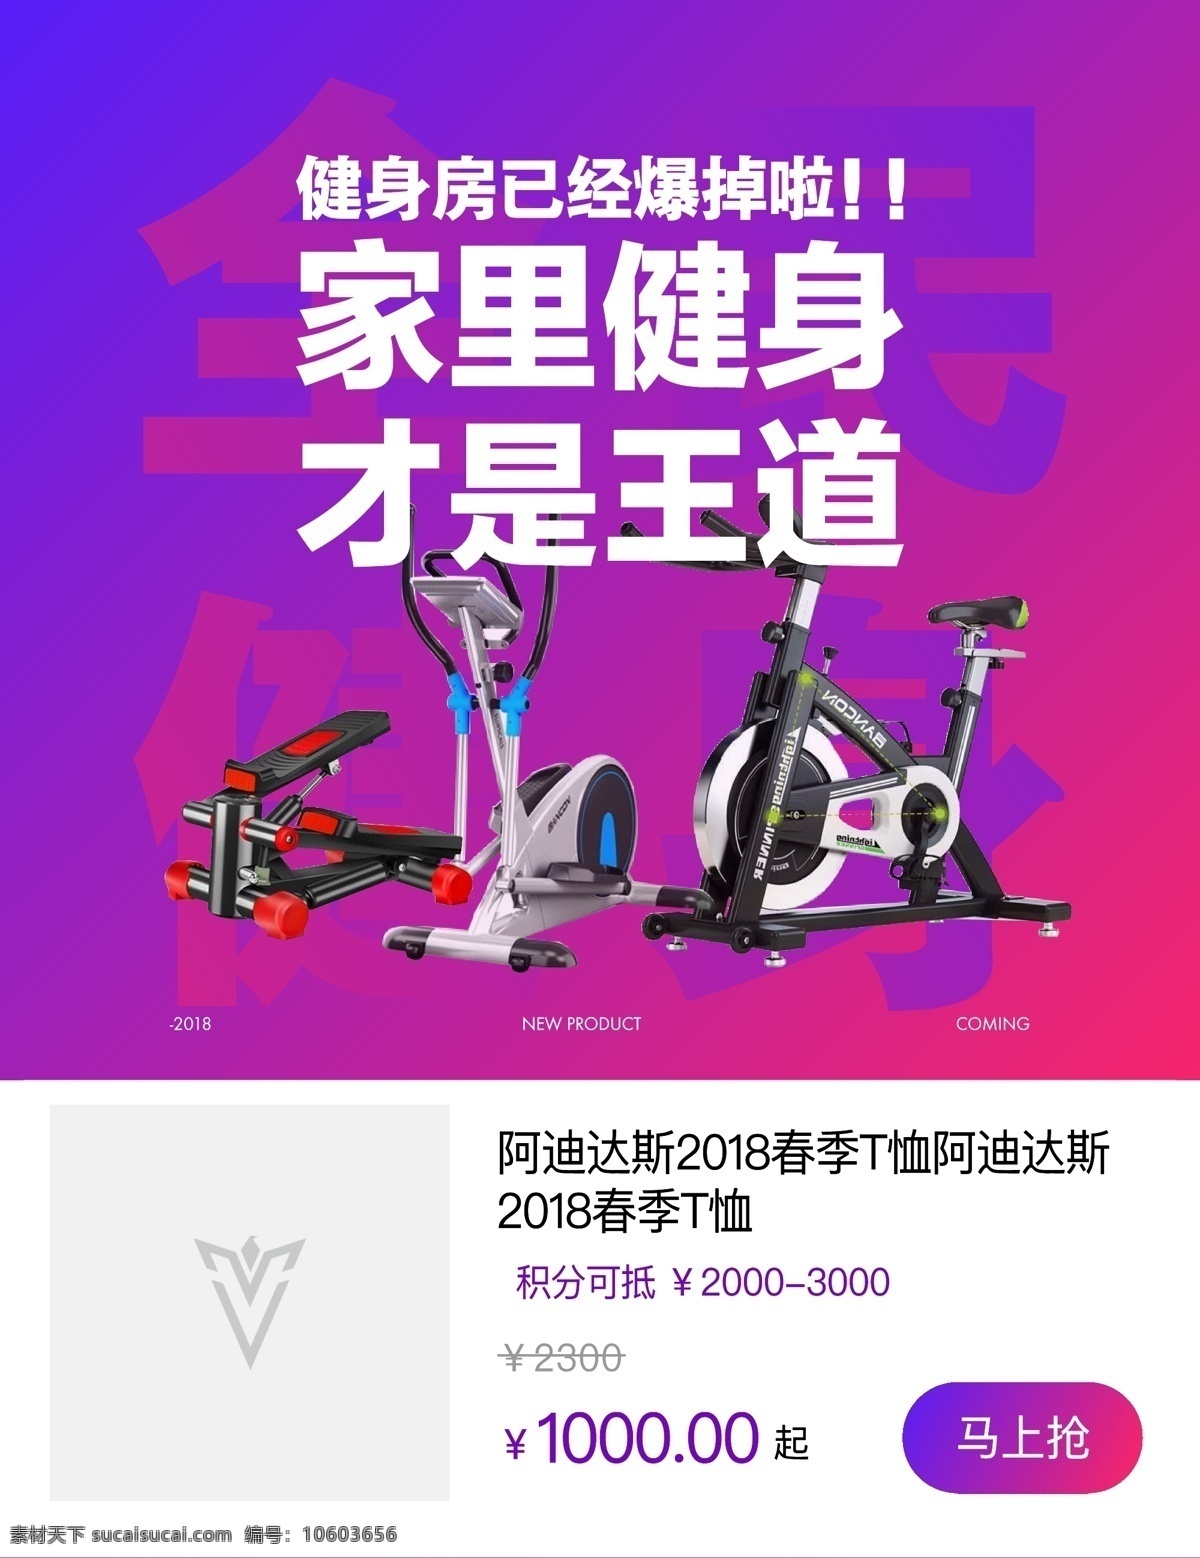 运动器材 banner 平面图 全民健身 淘宝电商 平面设计 健身器材